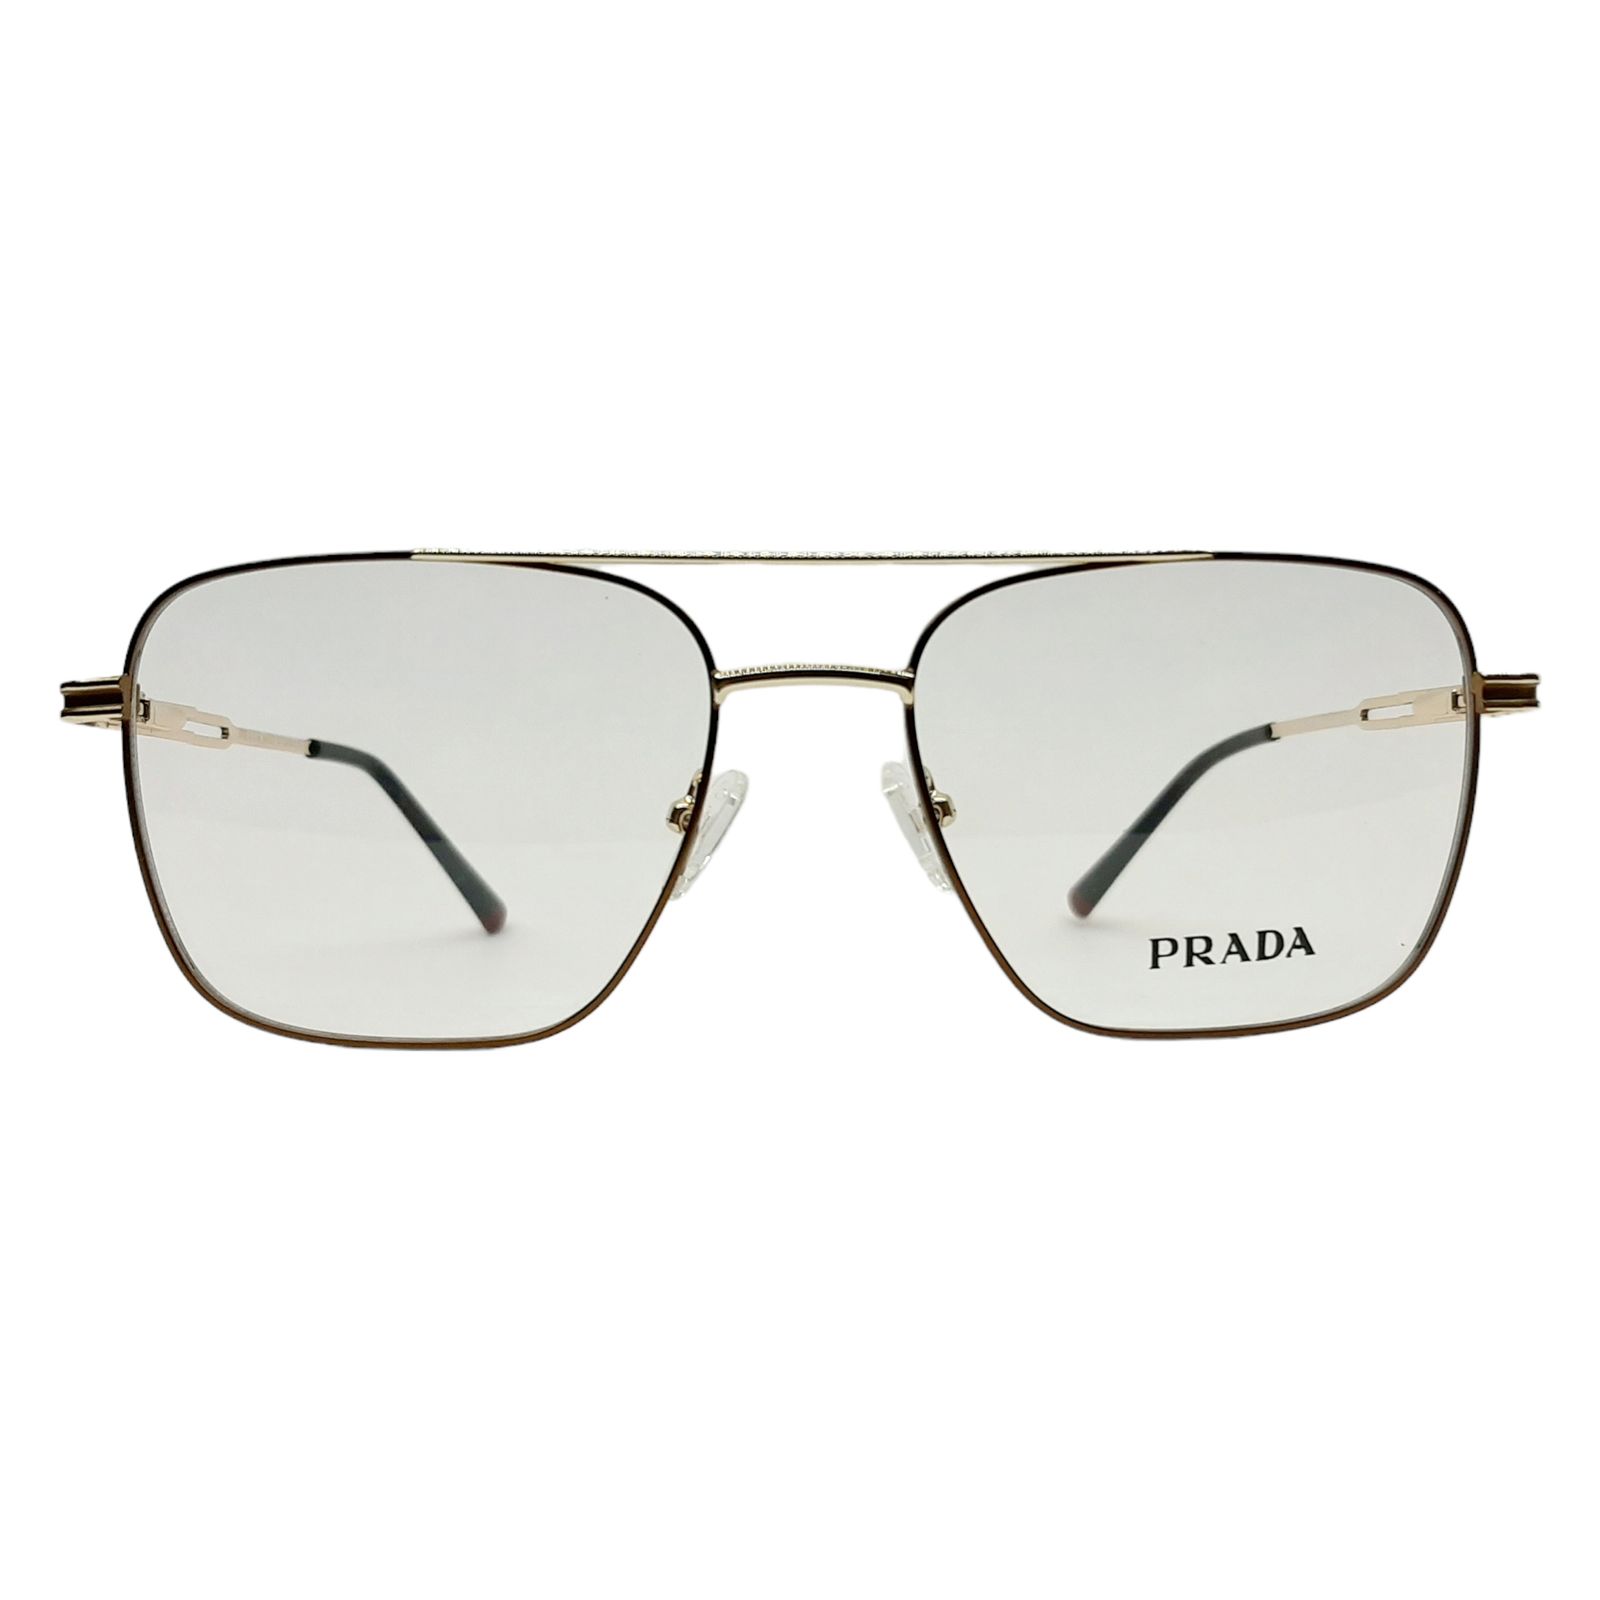 فریم عینک طبی پرادا مدل P8418c4